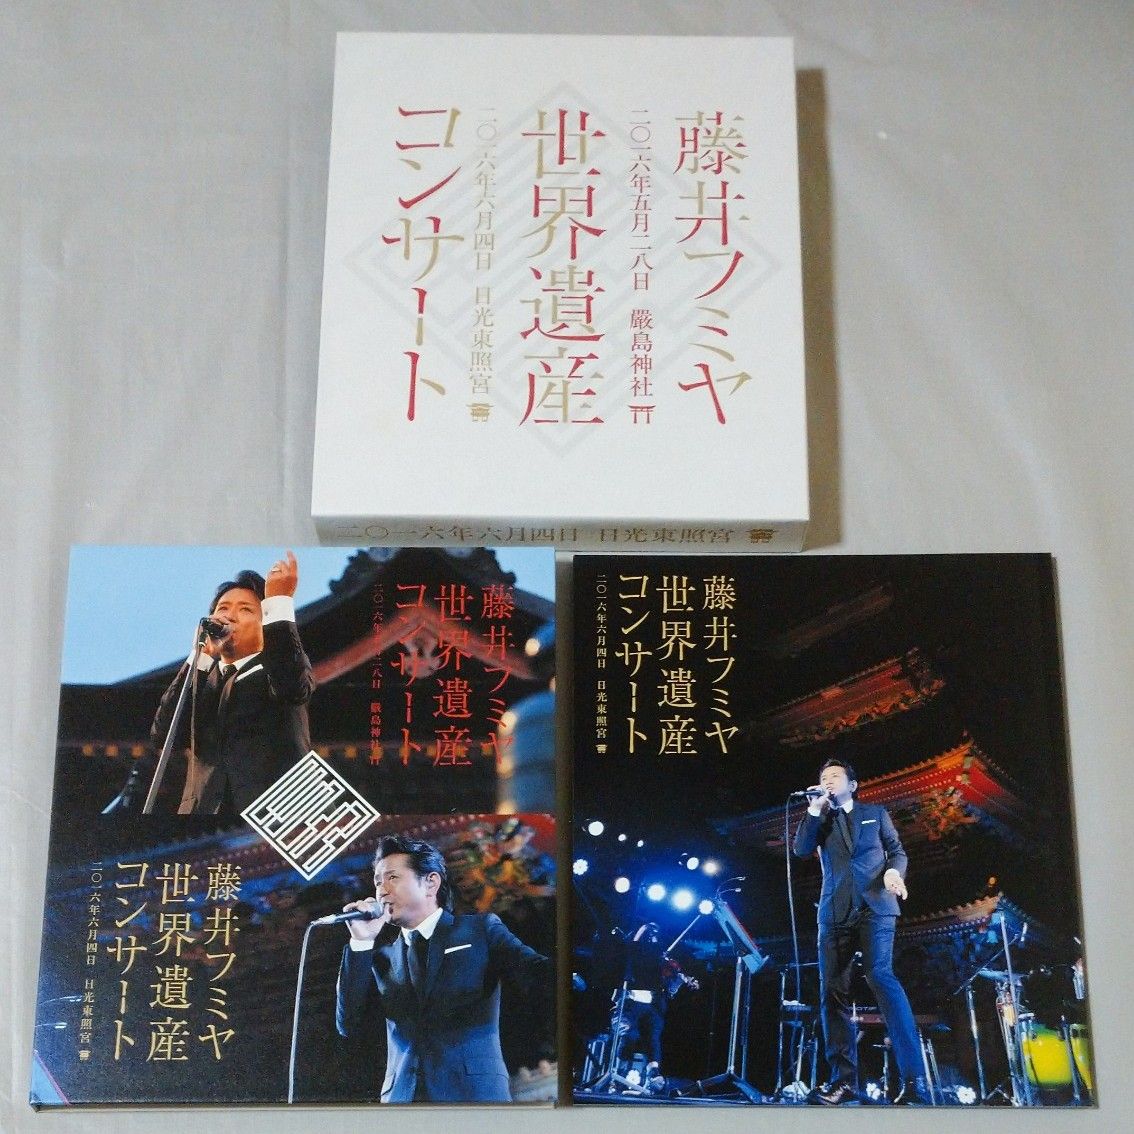 製造元特別価格 藤井フミヤさん コア CORE Ⅳ 2011 DVD | erational.com